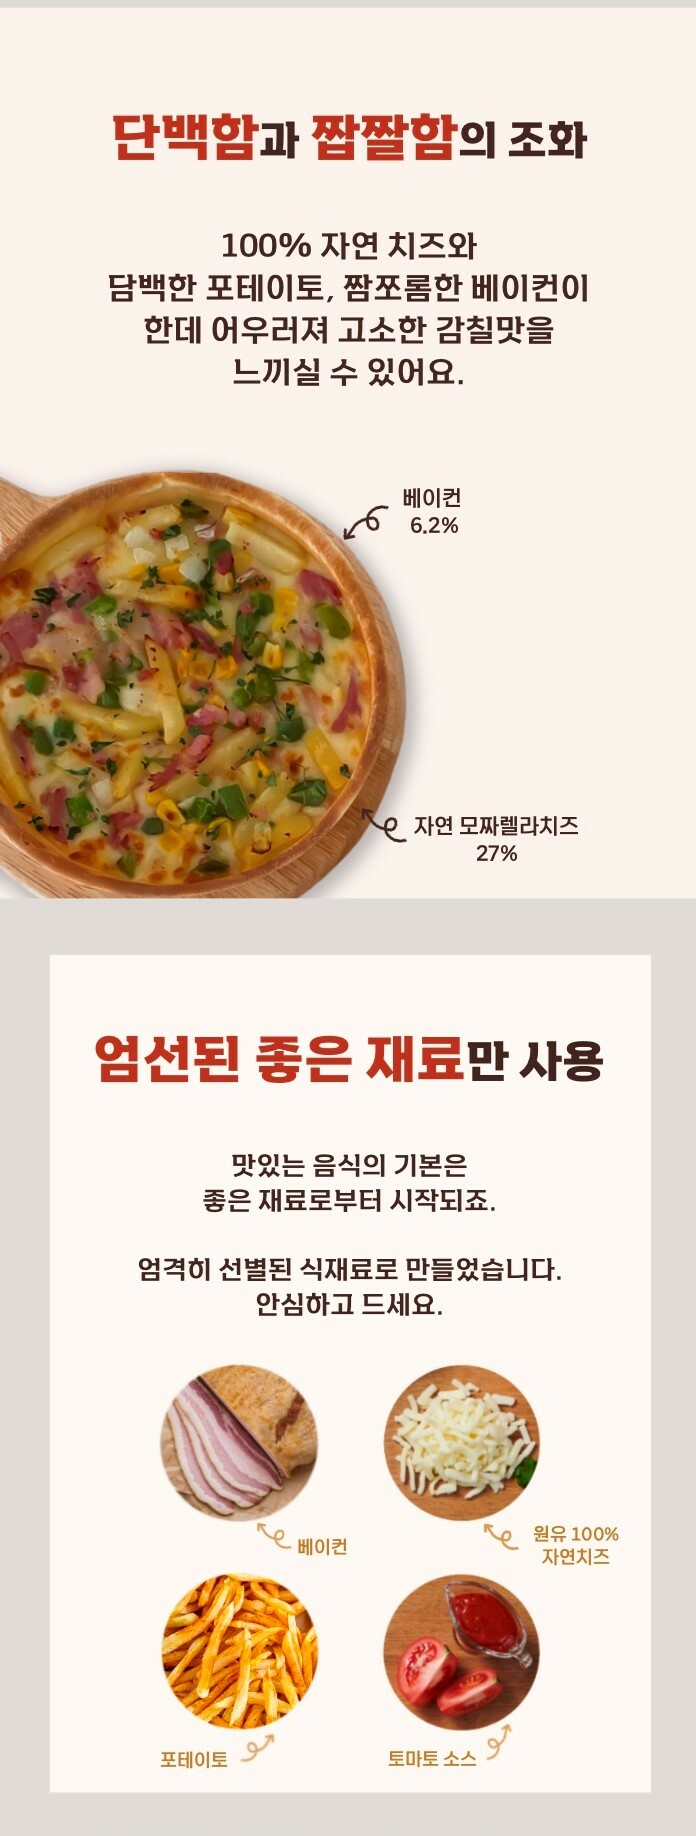 韓國食品-[월드푸드] 시카고 리얼 베이컨 포테이토피자 400g